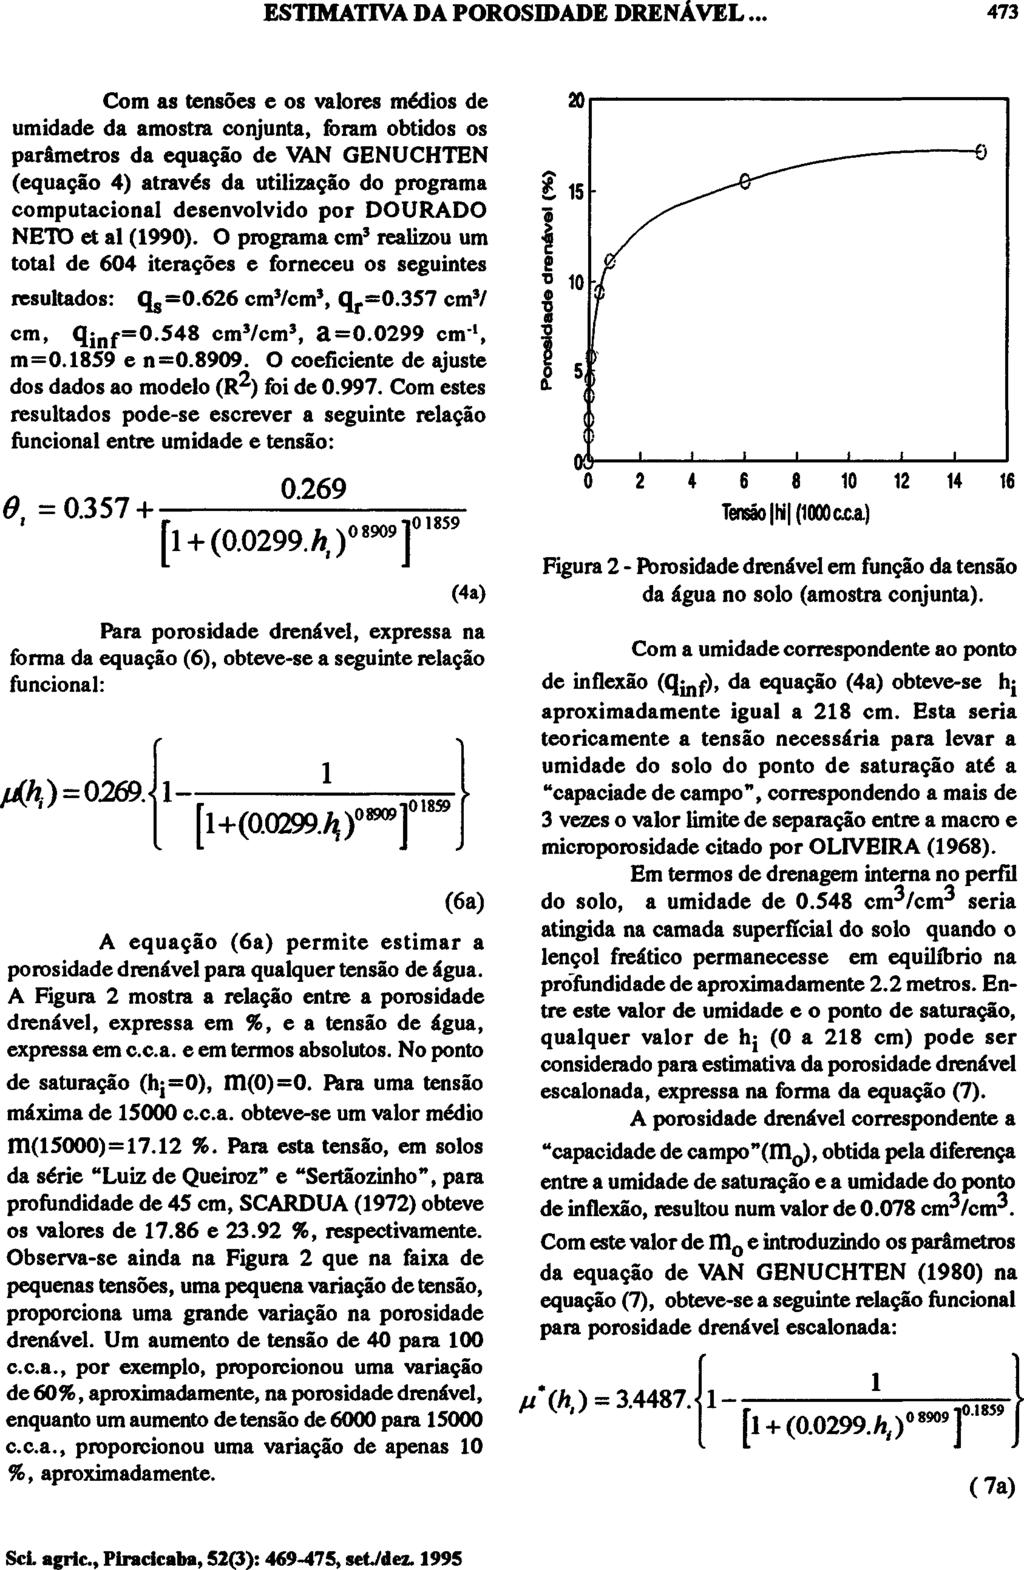 Com as tensões e os valores médios de umidade da amostra conjunta, foram obtidos os parâmetros da equação de VAN GENUCHTEN (equação 4) através da utilização do programa computacional desenvolvido por